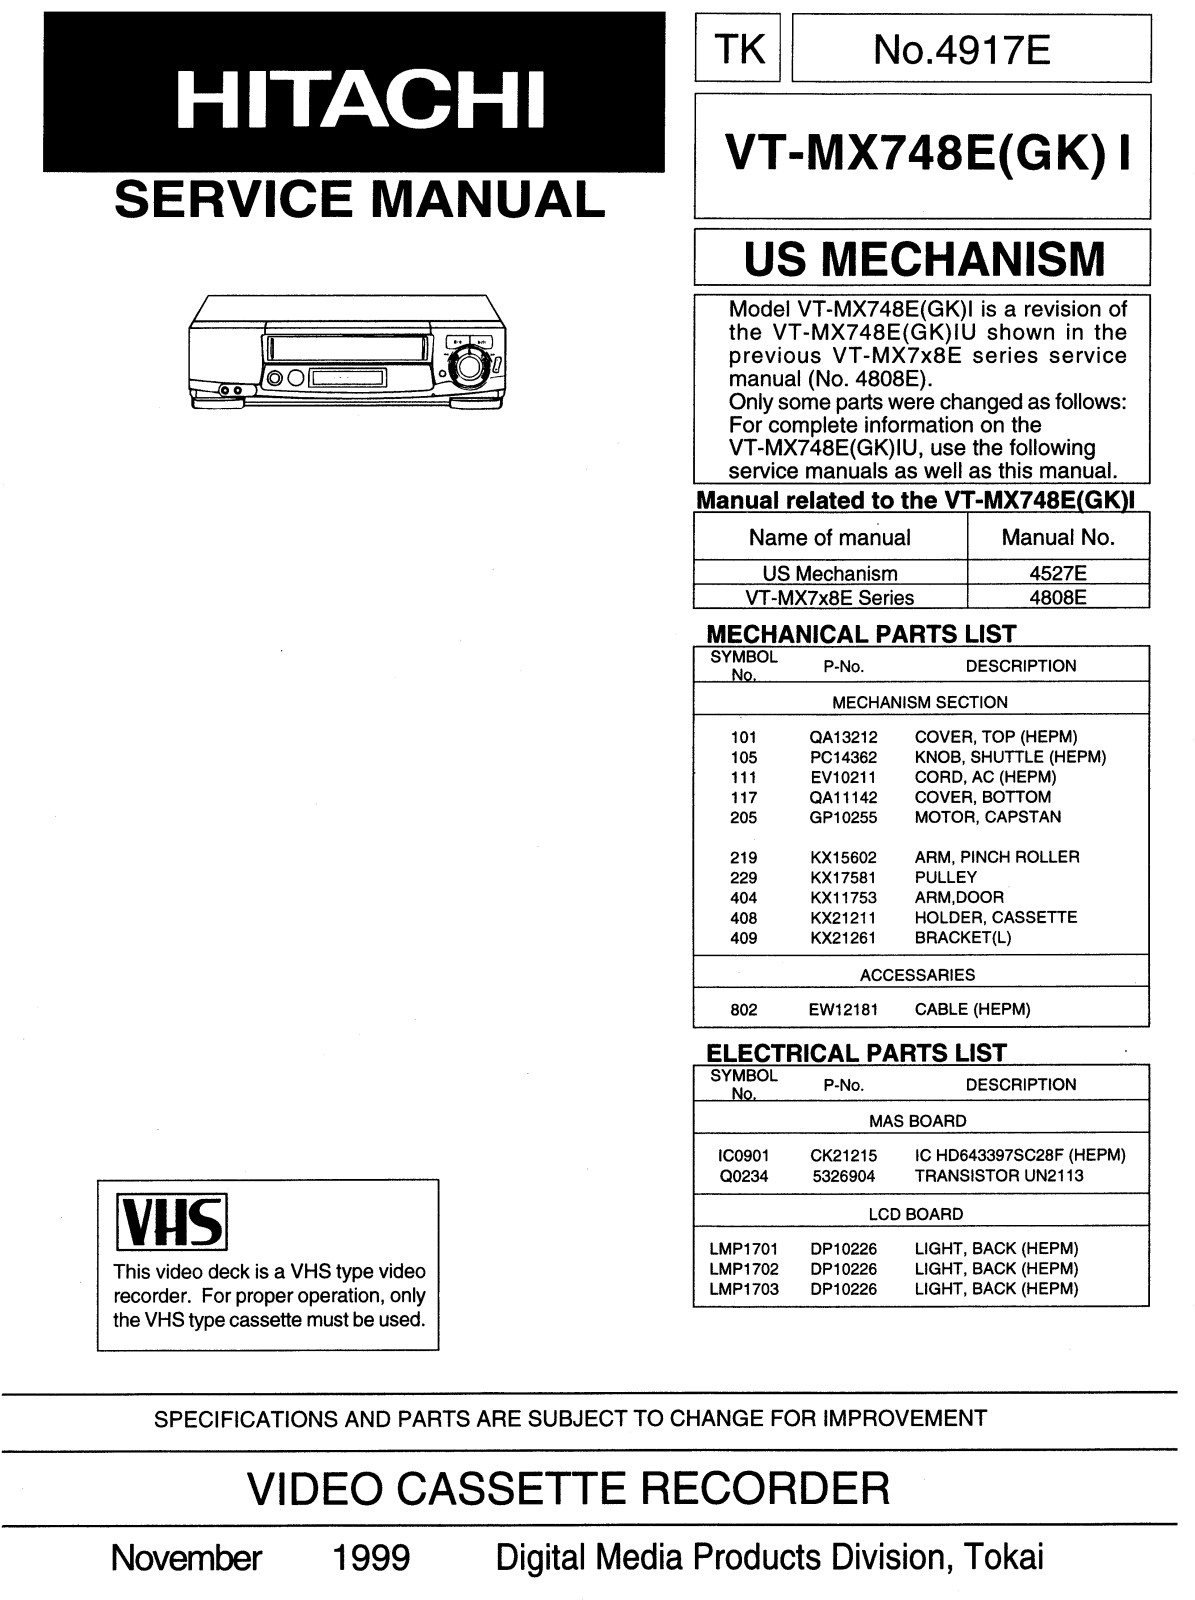 Hitachi VT-MX748 Service Manual